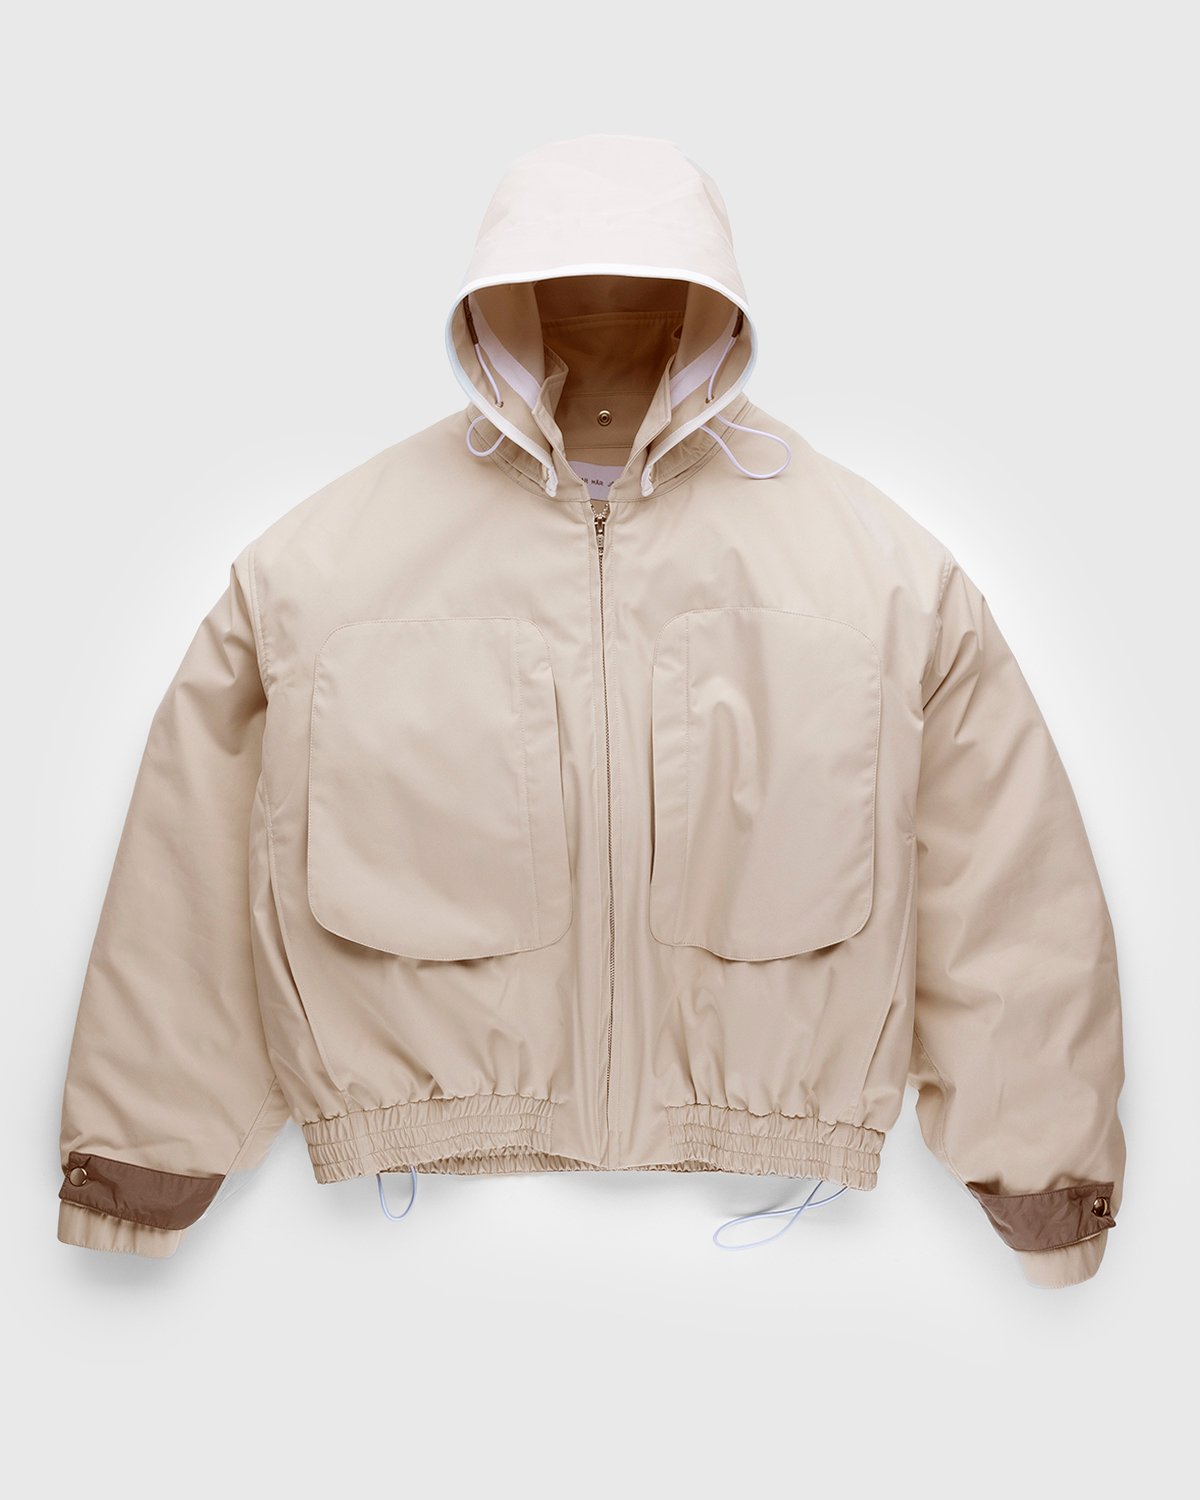 Arnar Mar Jonsson - Sympatex Patch Pocket Outerwear Jacket Beige - Clothing - Beige - Image 1